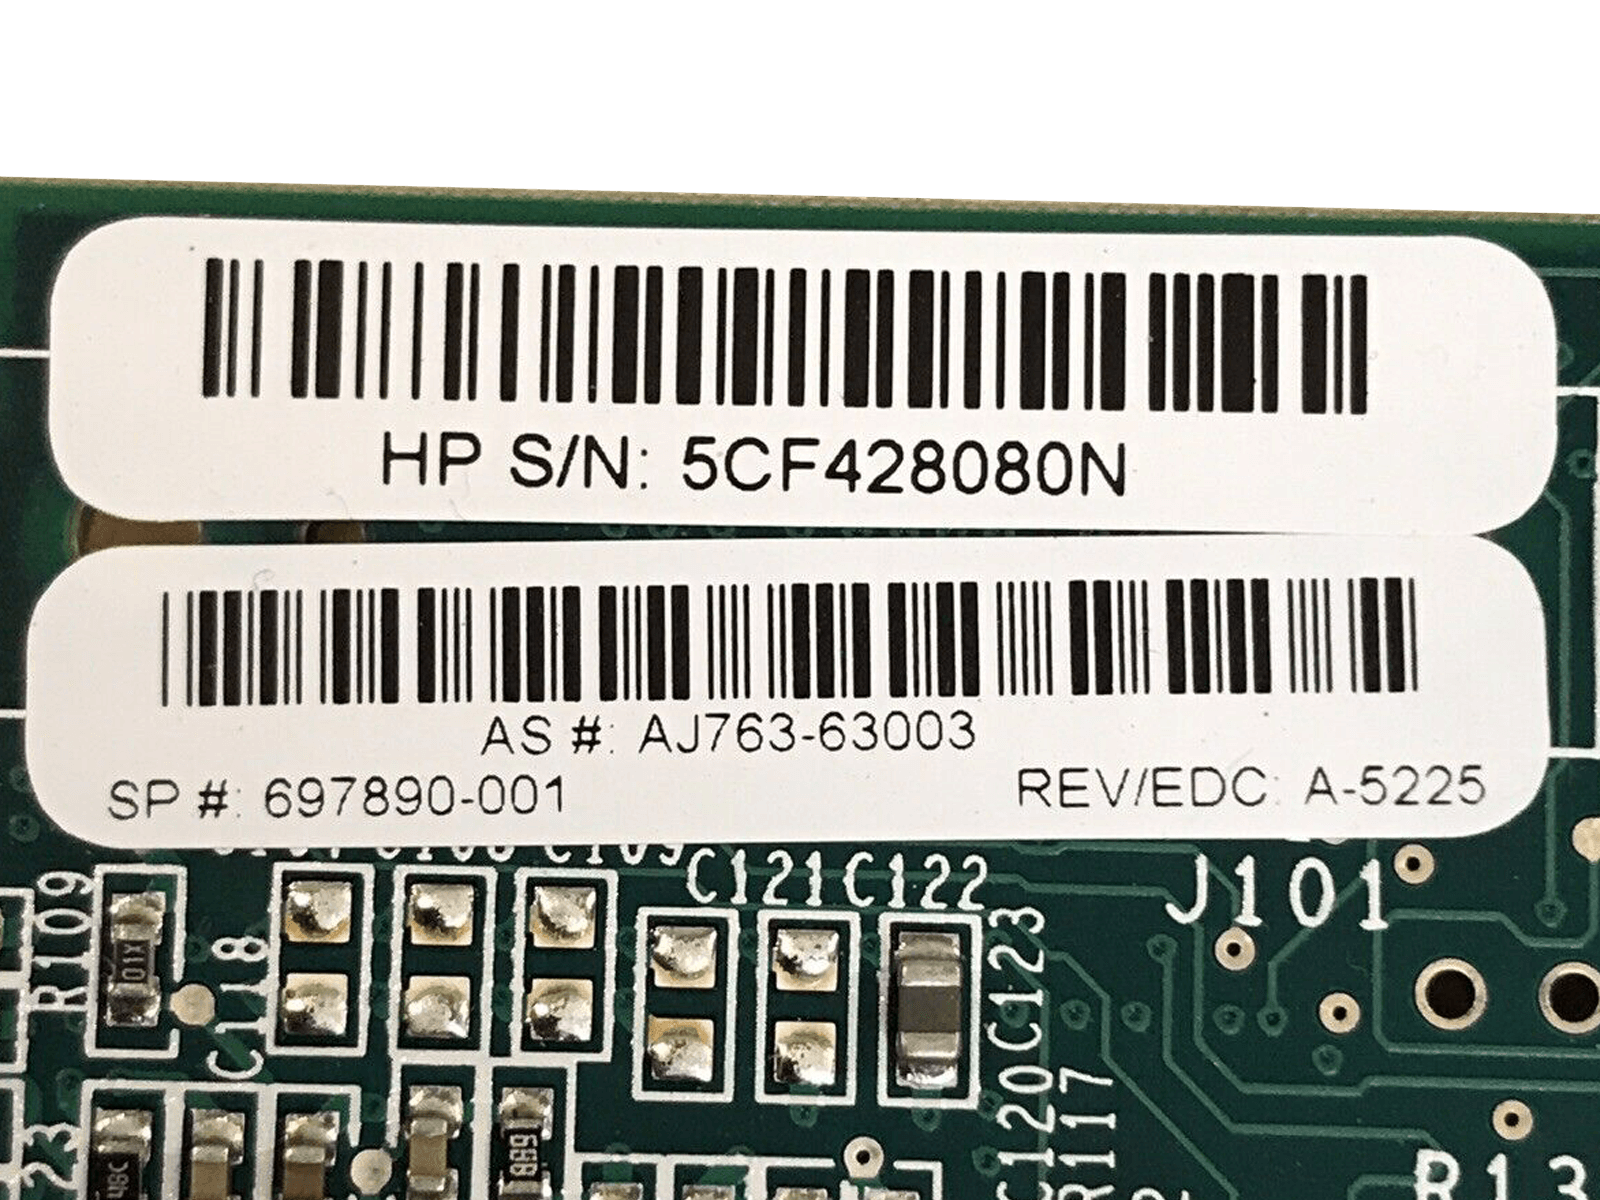 HP SL230s G8 Two Xeon E5-2660 256GB 4x SFF 2x 200GB SSD 560FLR FBWC 10GbE 8Gb FC.